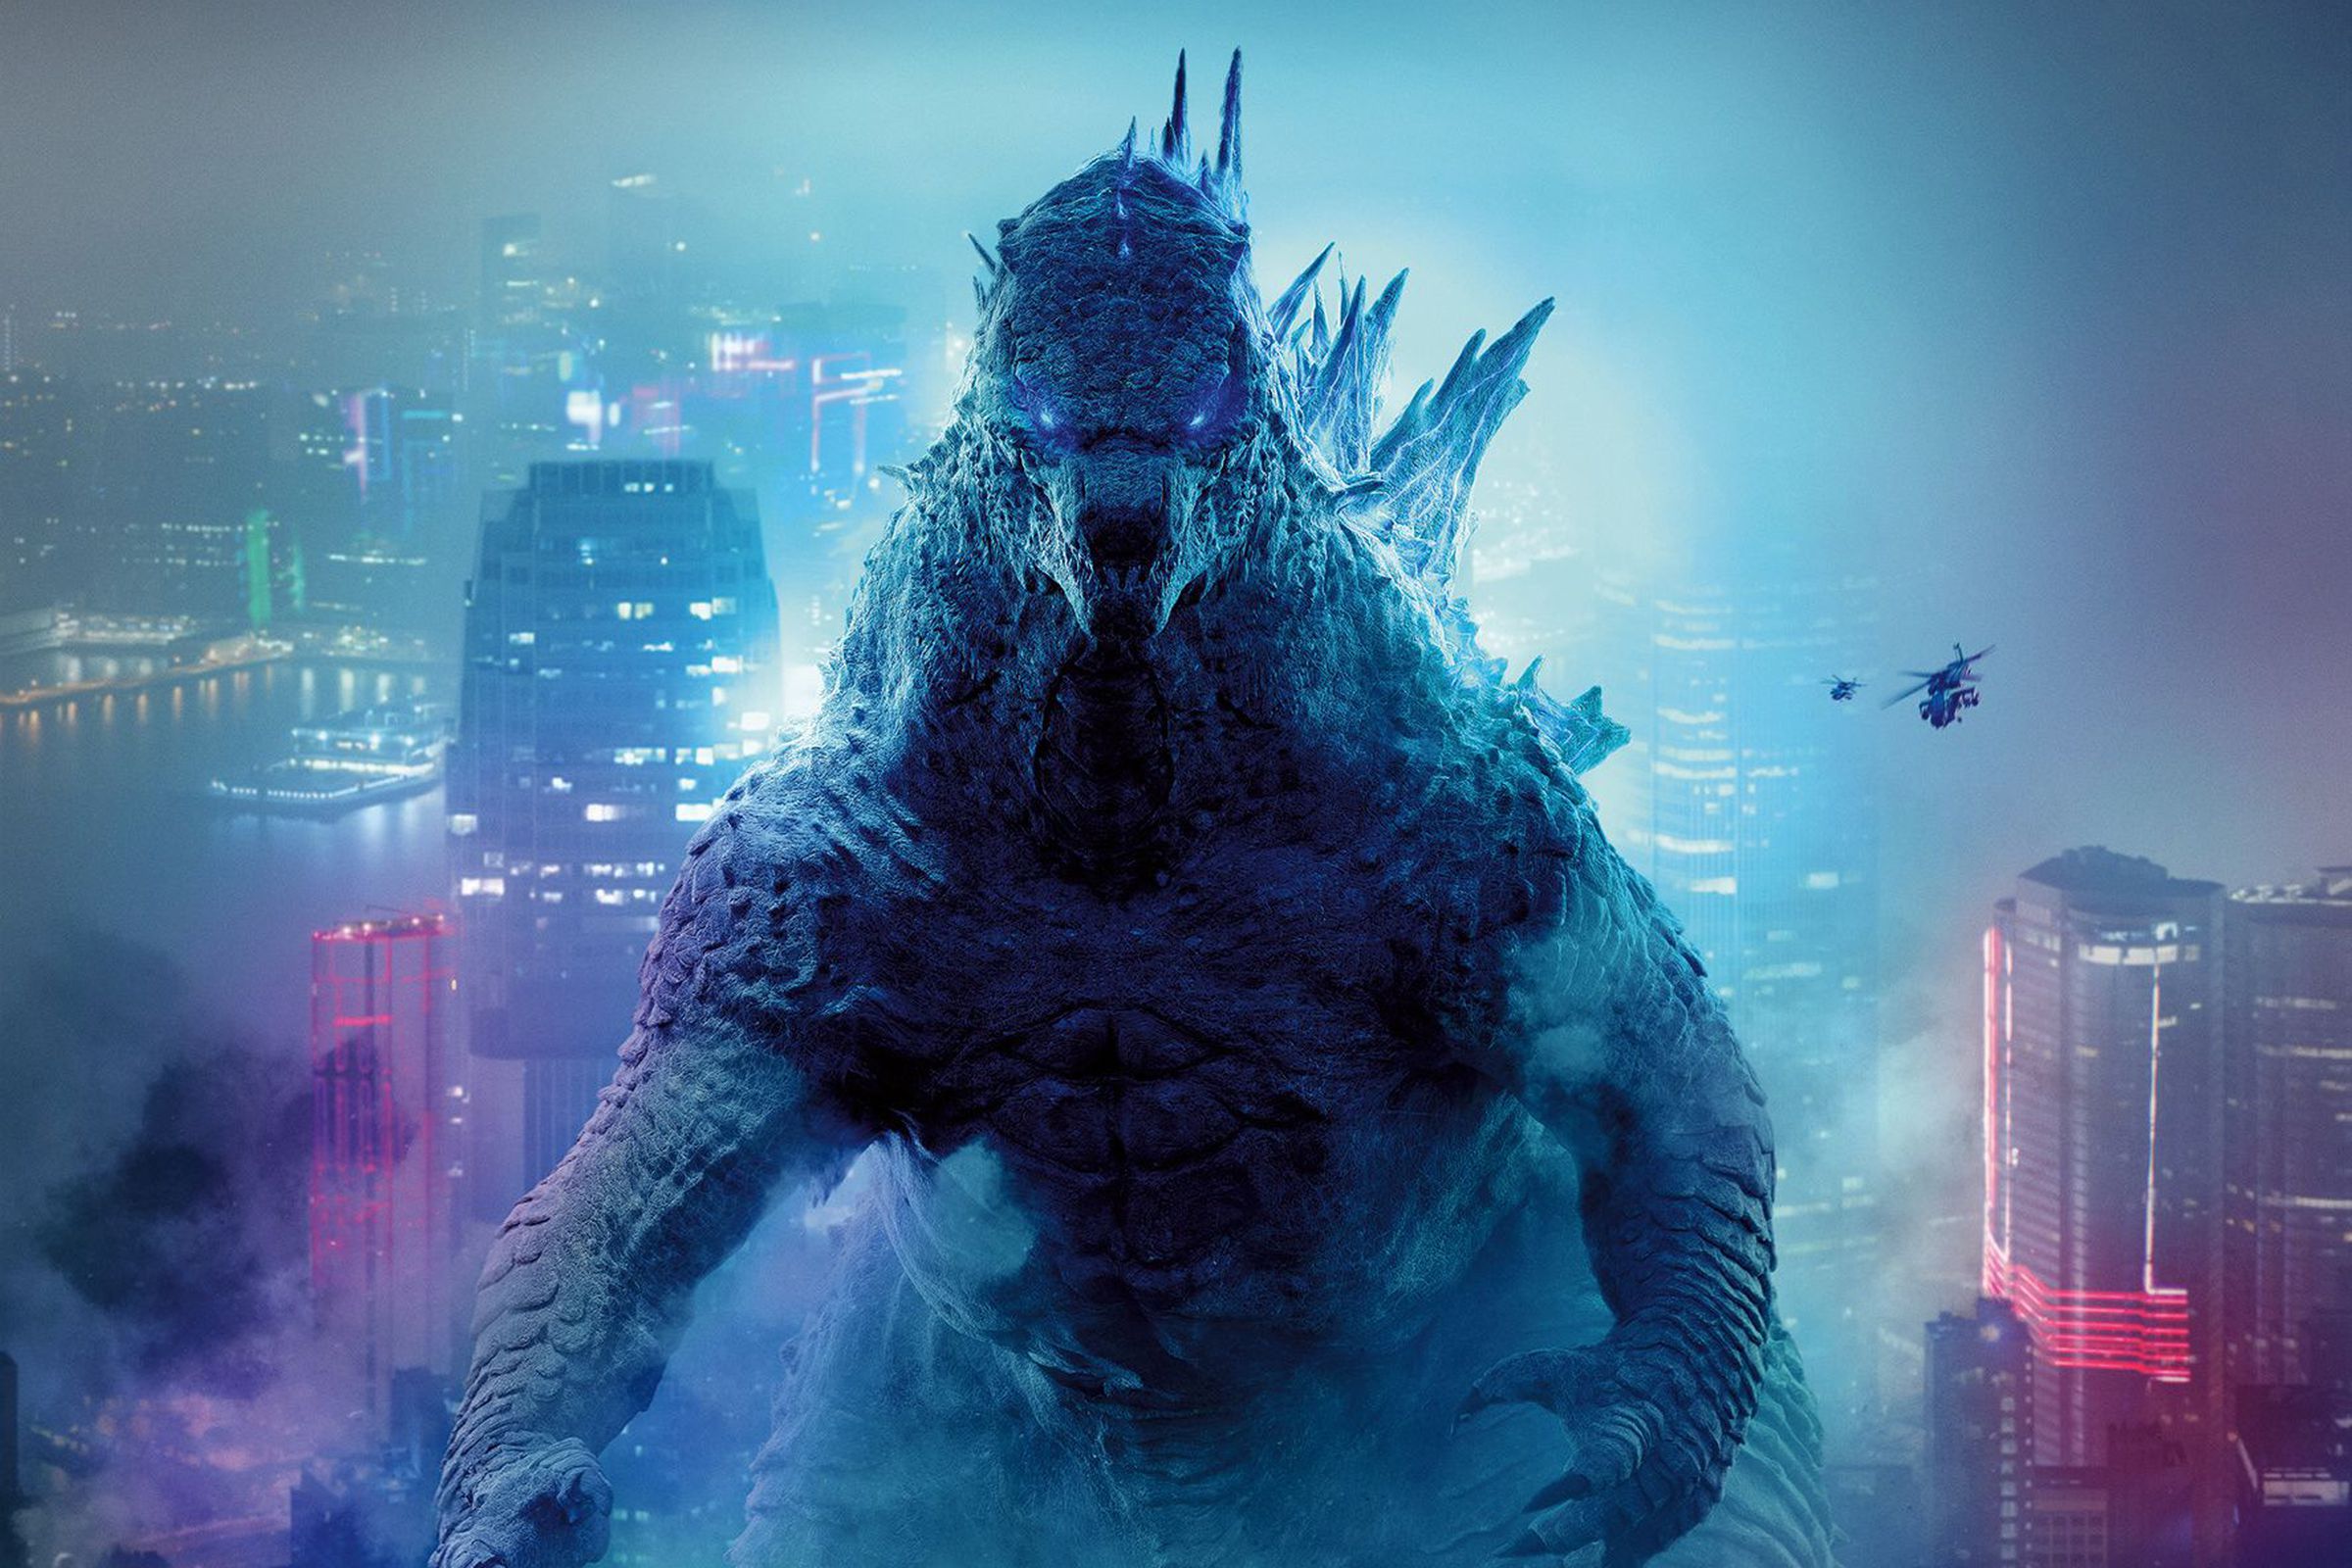 Godzilla on the international poster for Godzilla vs. Kong.